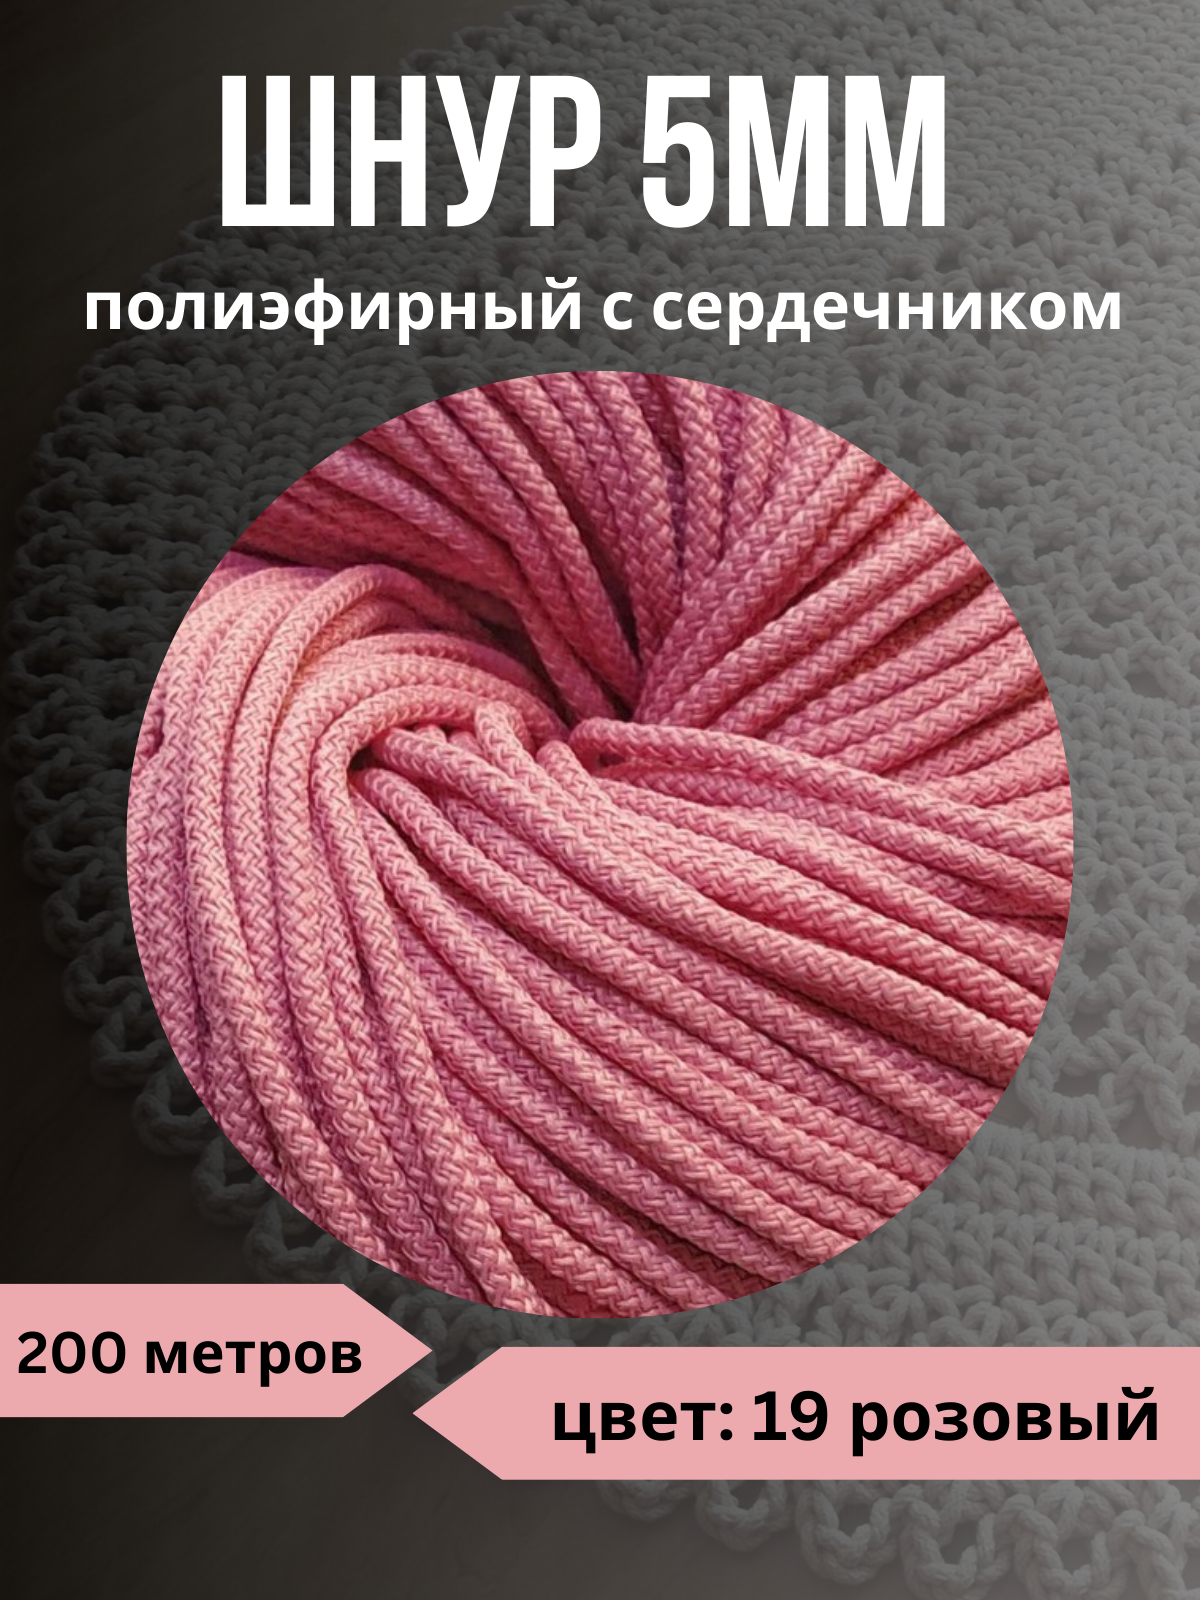 Шнур полиэфирный с сердечником 5мм, 200м, цвет 19 розовый - 1 пасма